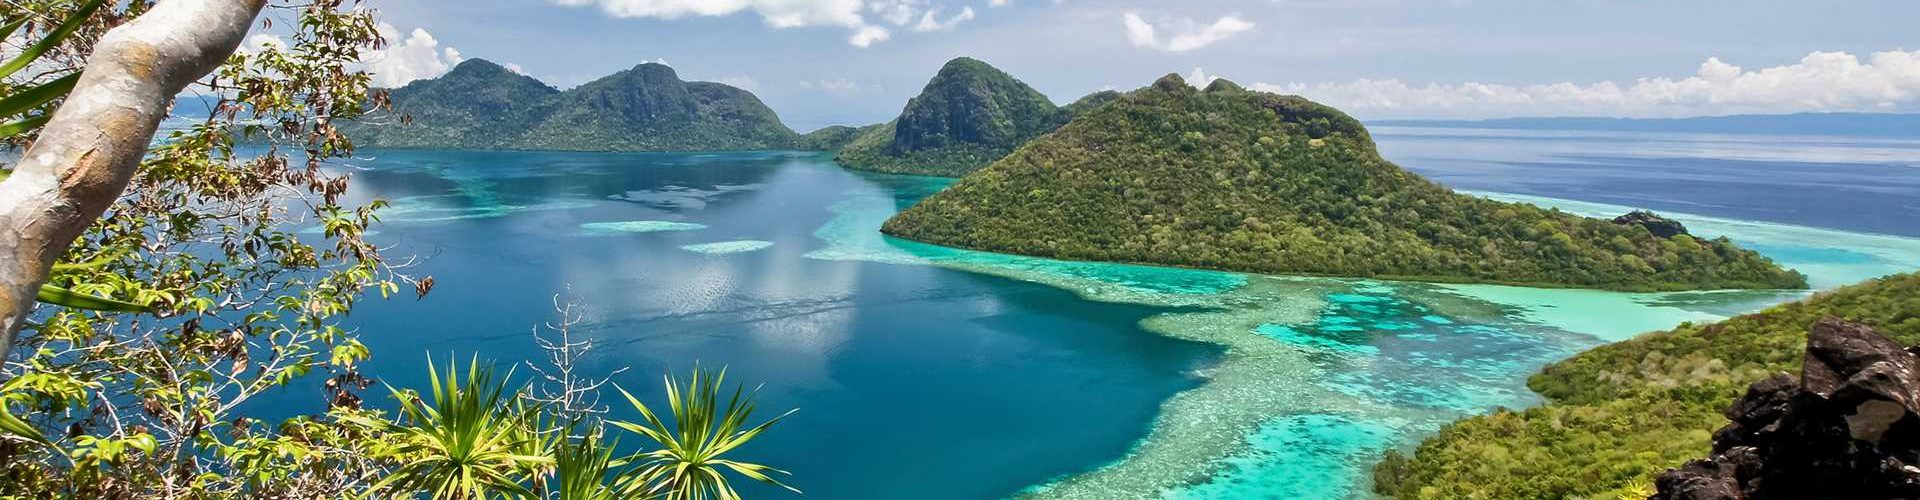 تعرفوا على أجمل الجزر في ماليزيا وأفضل فنادقها الموصى بها